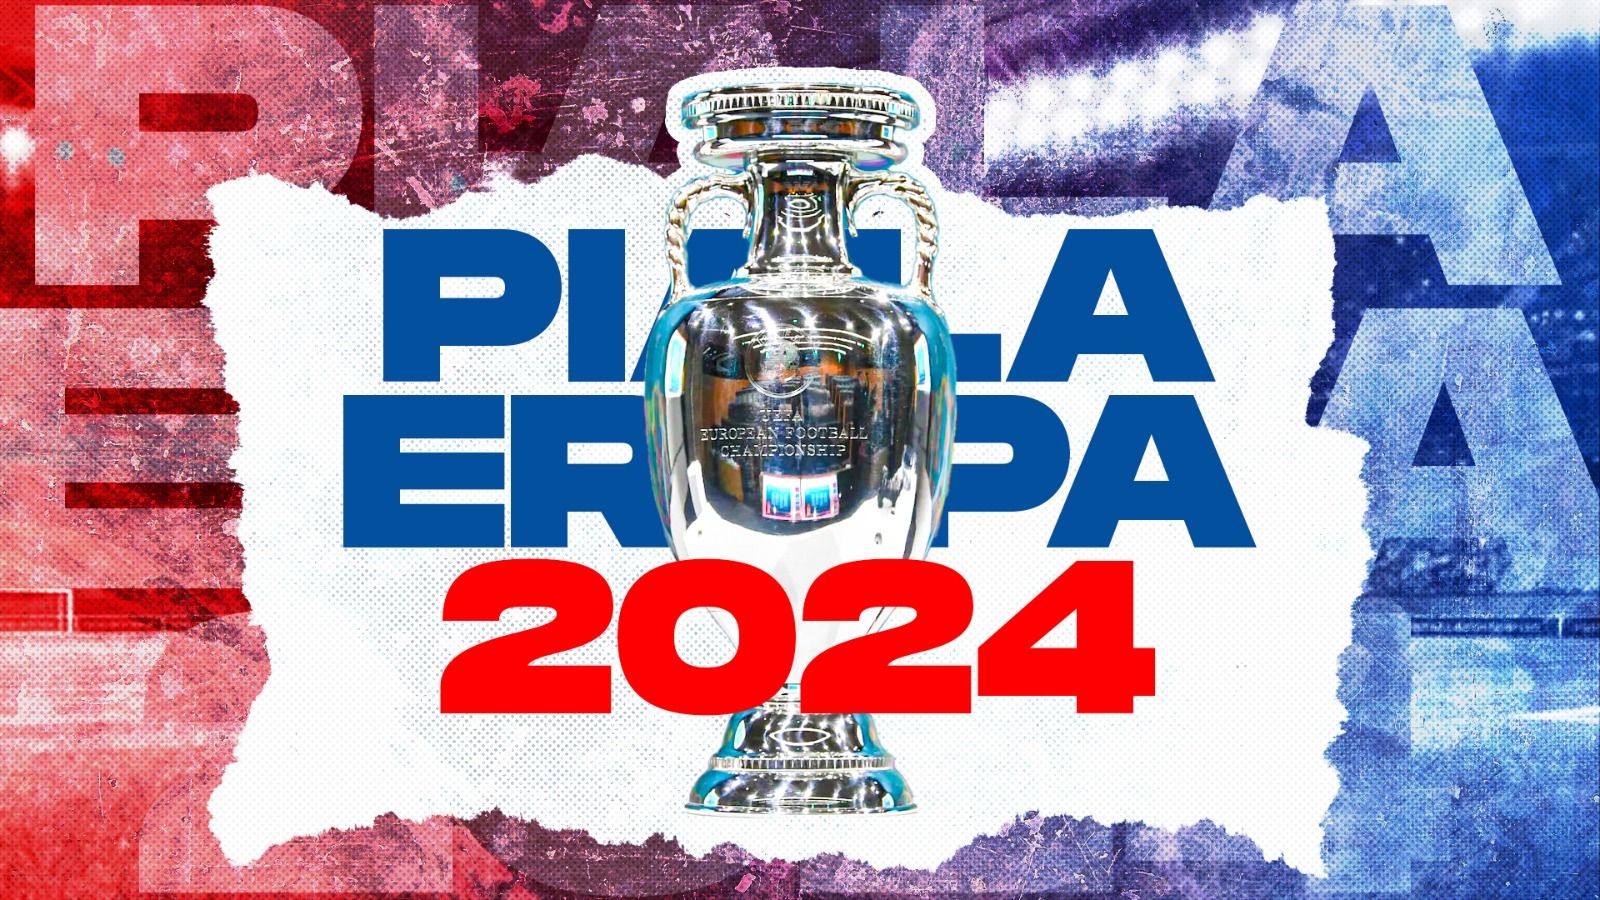 Jadwal, venue dan segala hal tentang Piala Eropa 2024 (EURO 2024).(Dede Mauladi/Skor.id).